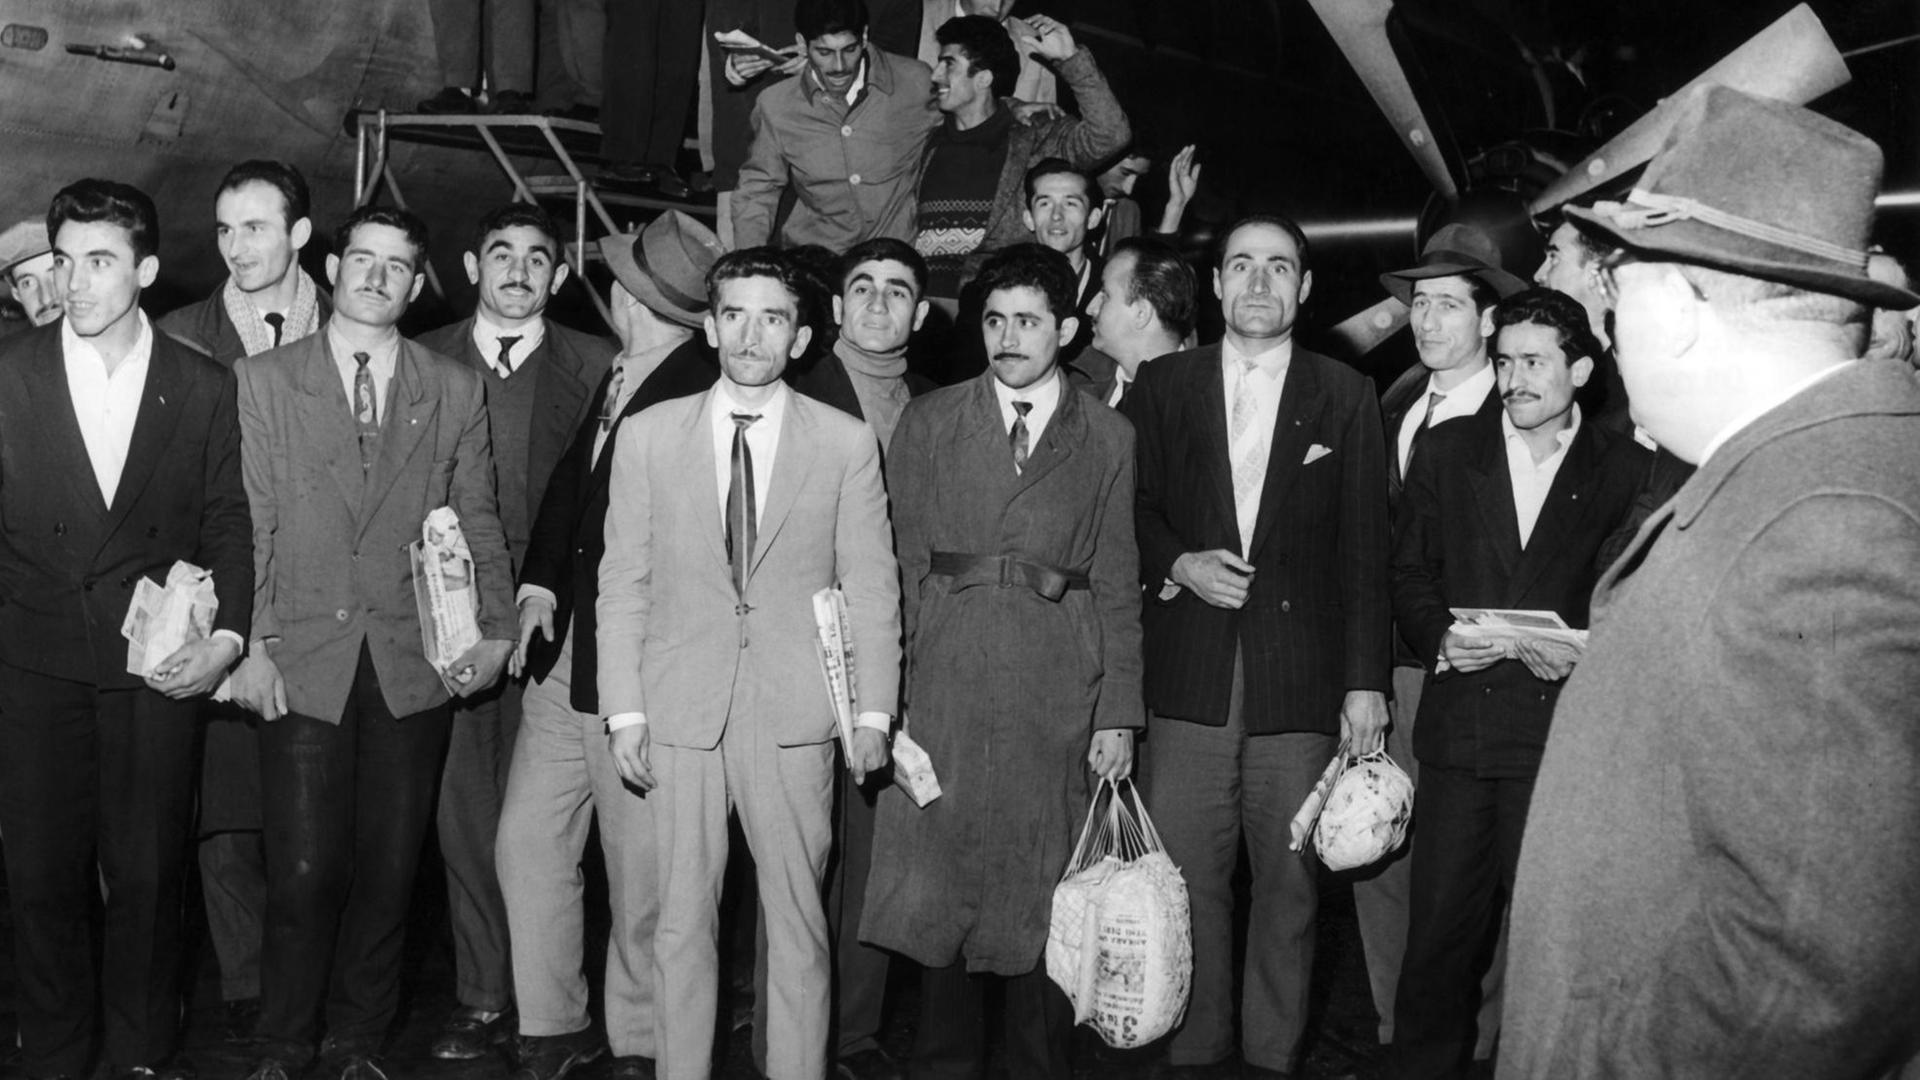 Ankunft von 55 türkischen Arbeitskräften am 27.11.1961 auf dem Flughafen in Düsseldorf nach Abschluss des deutsch-türkischen Anwerbeabkommens.